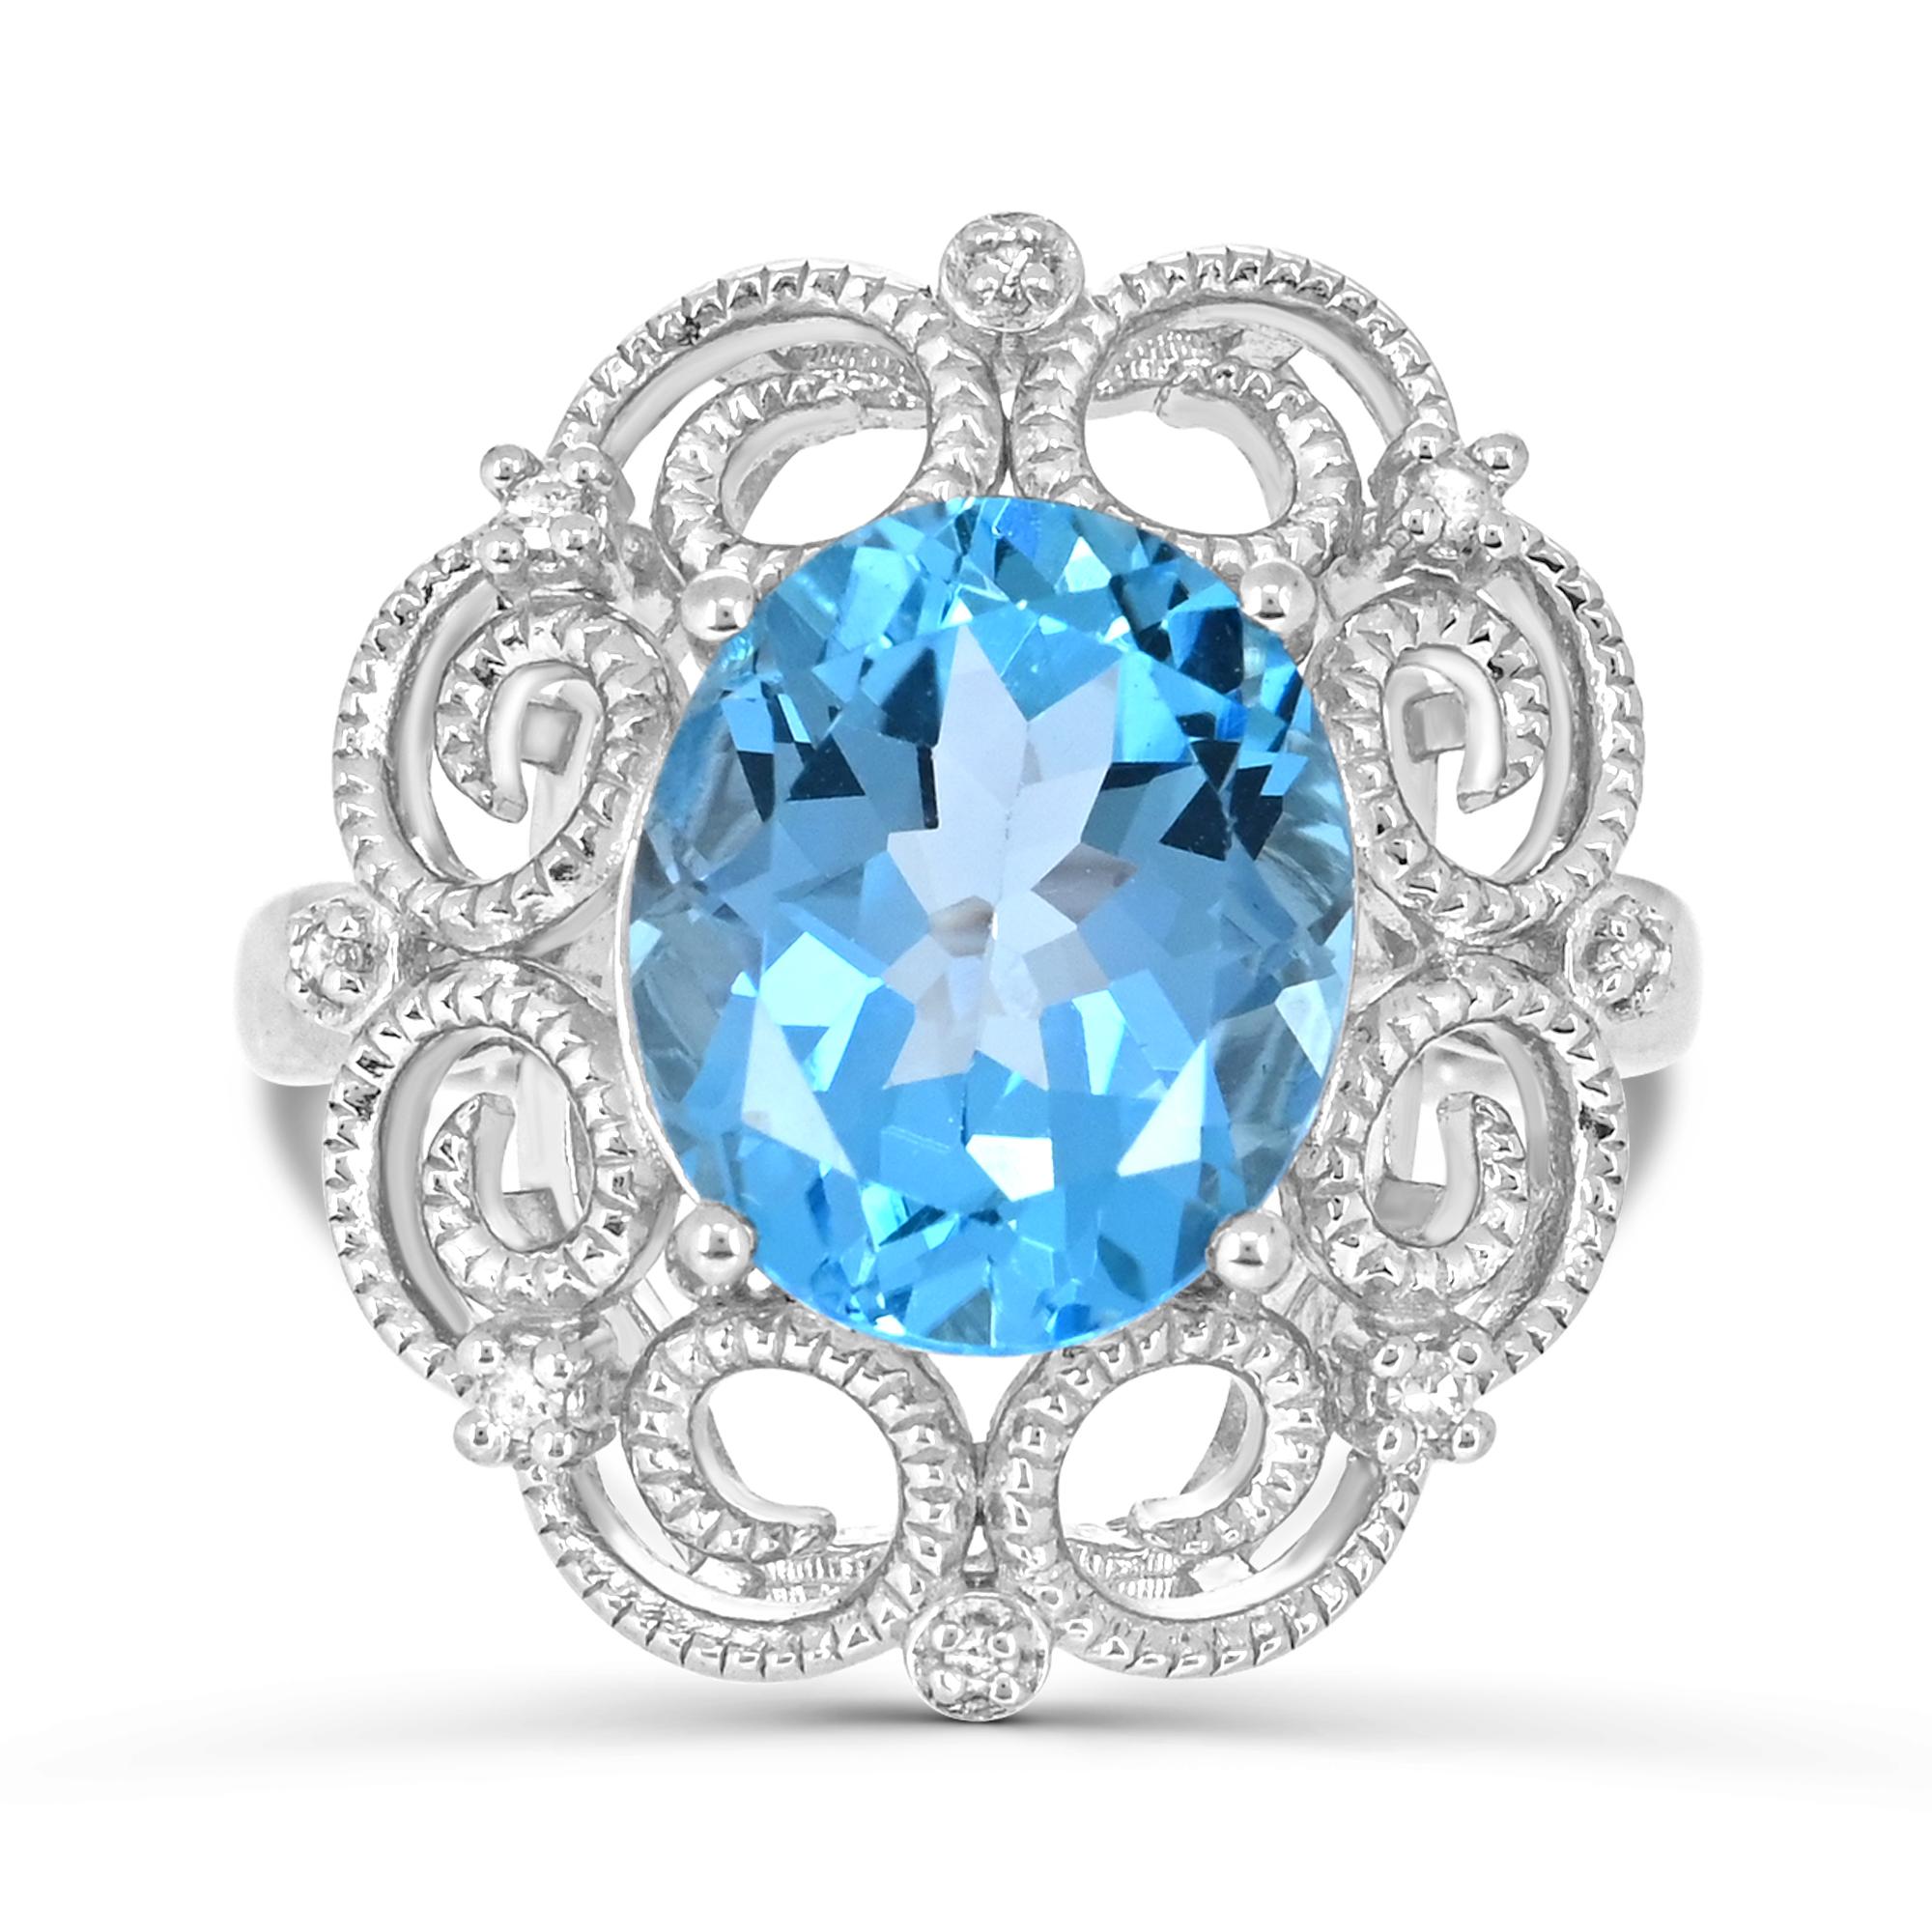 Laissez-vous séduire par l'élégance de notre bague ovale en argent sterling ornée d'une topaze bleue suisse et d'une bordure rétro rehaussée de diamants. Fabriquée avec une attention méticuleuse aux détails, cette bague présente une combinaison